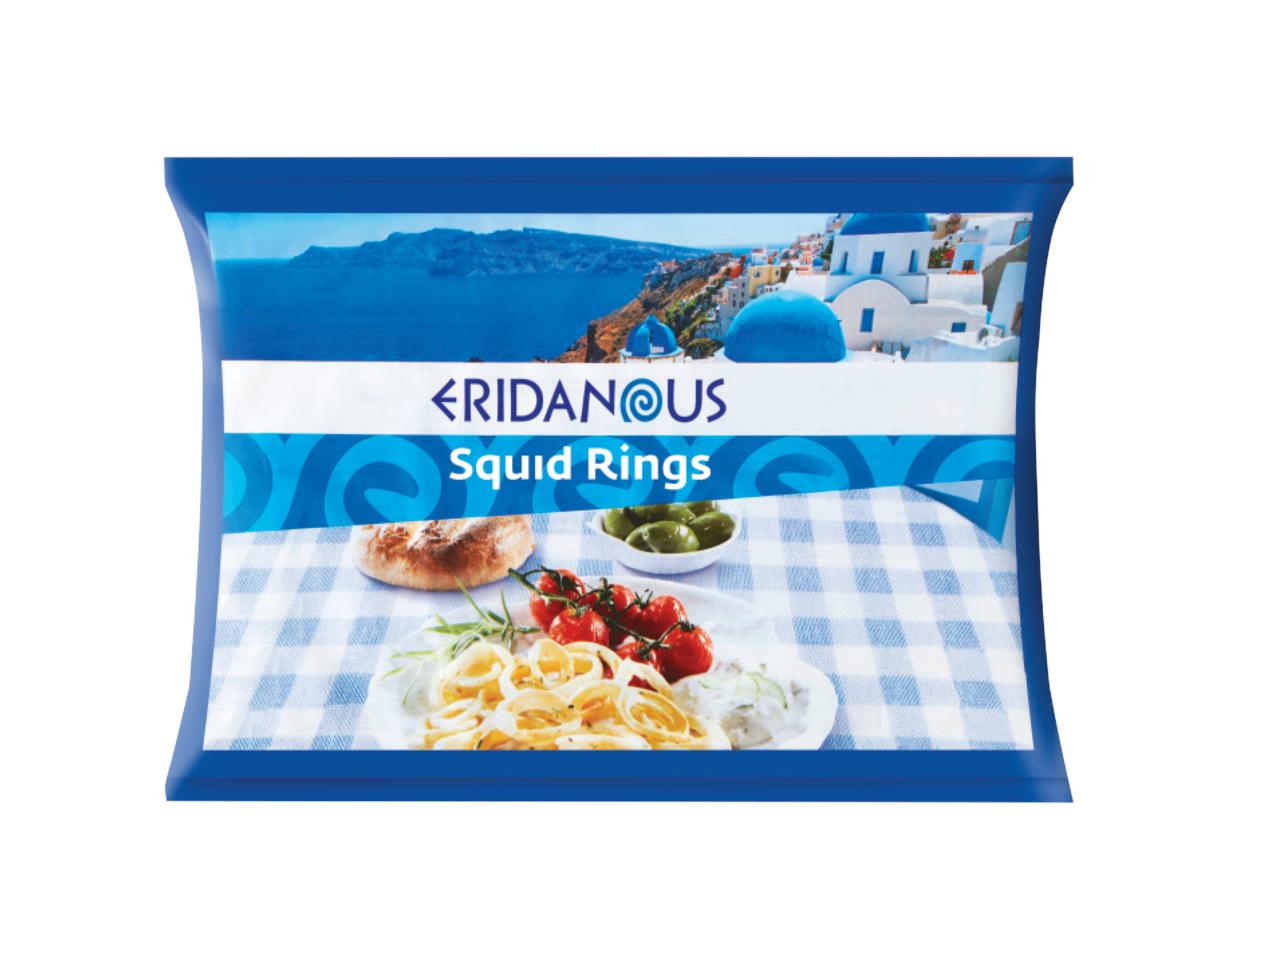 ERIDANOUS(R) Squid Rings